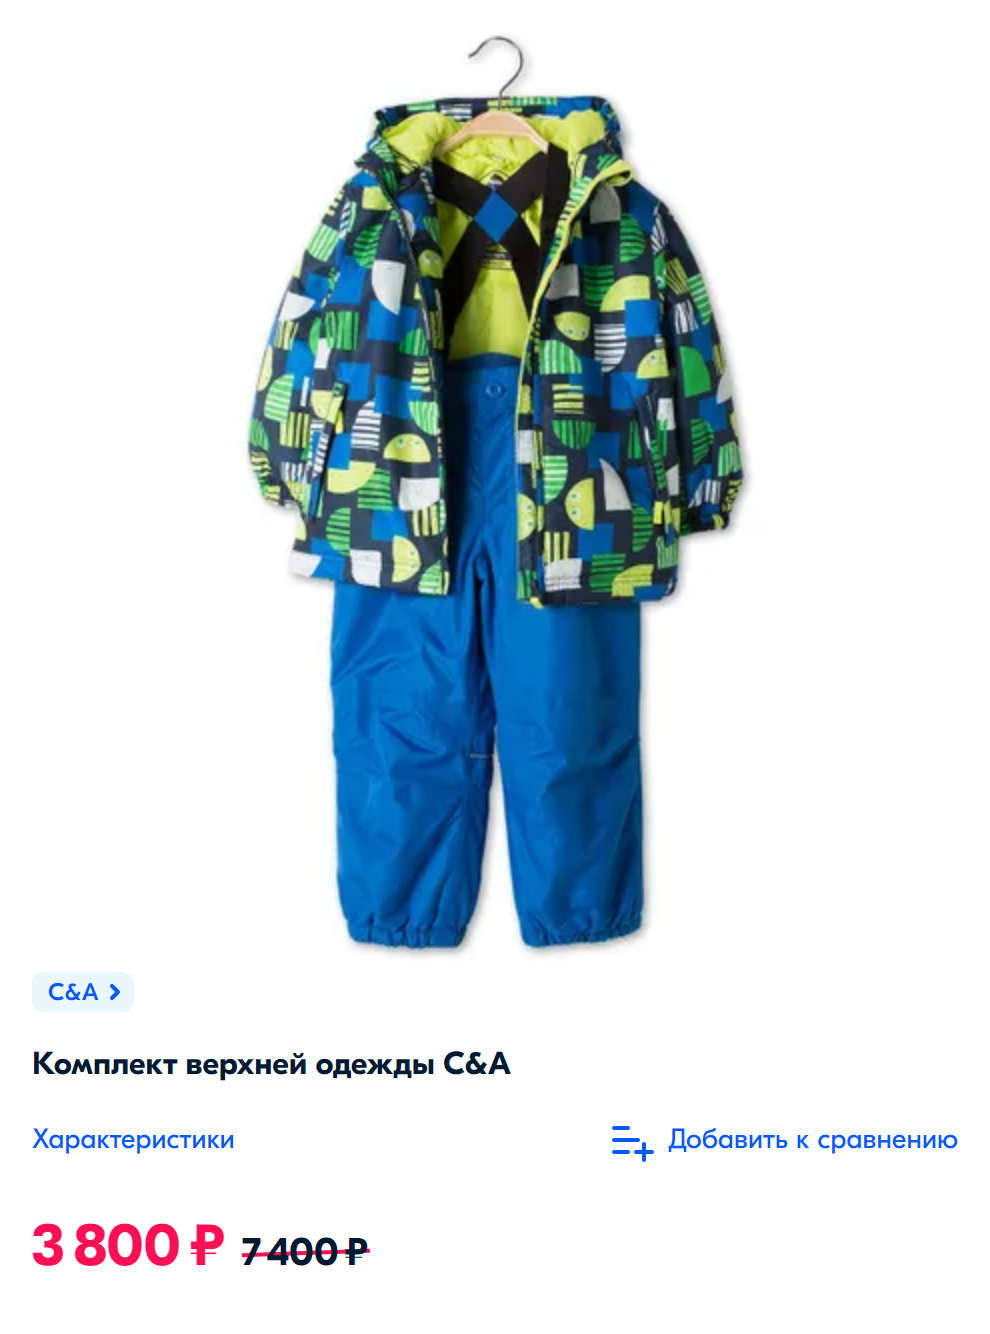 Для&nbsp;сравнения: похожий костюм из водоотталкивающей мембраны и с аналогичным утеплителем в магазине стоит 3800 <span class=ruble>Р</span>. Источник: ozon.ru